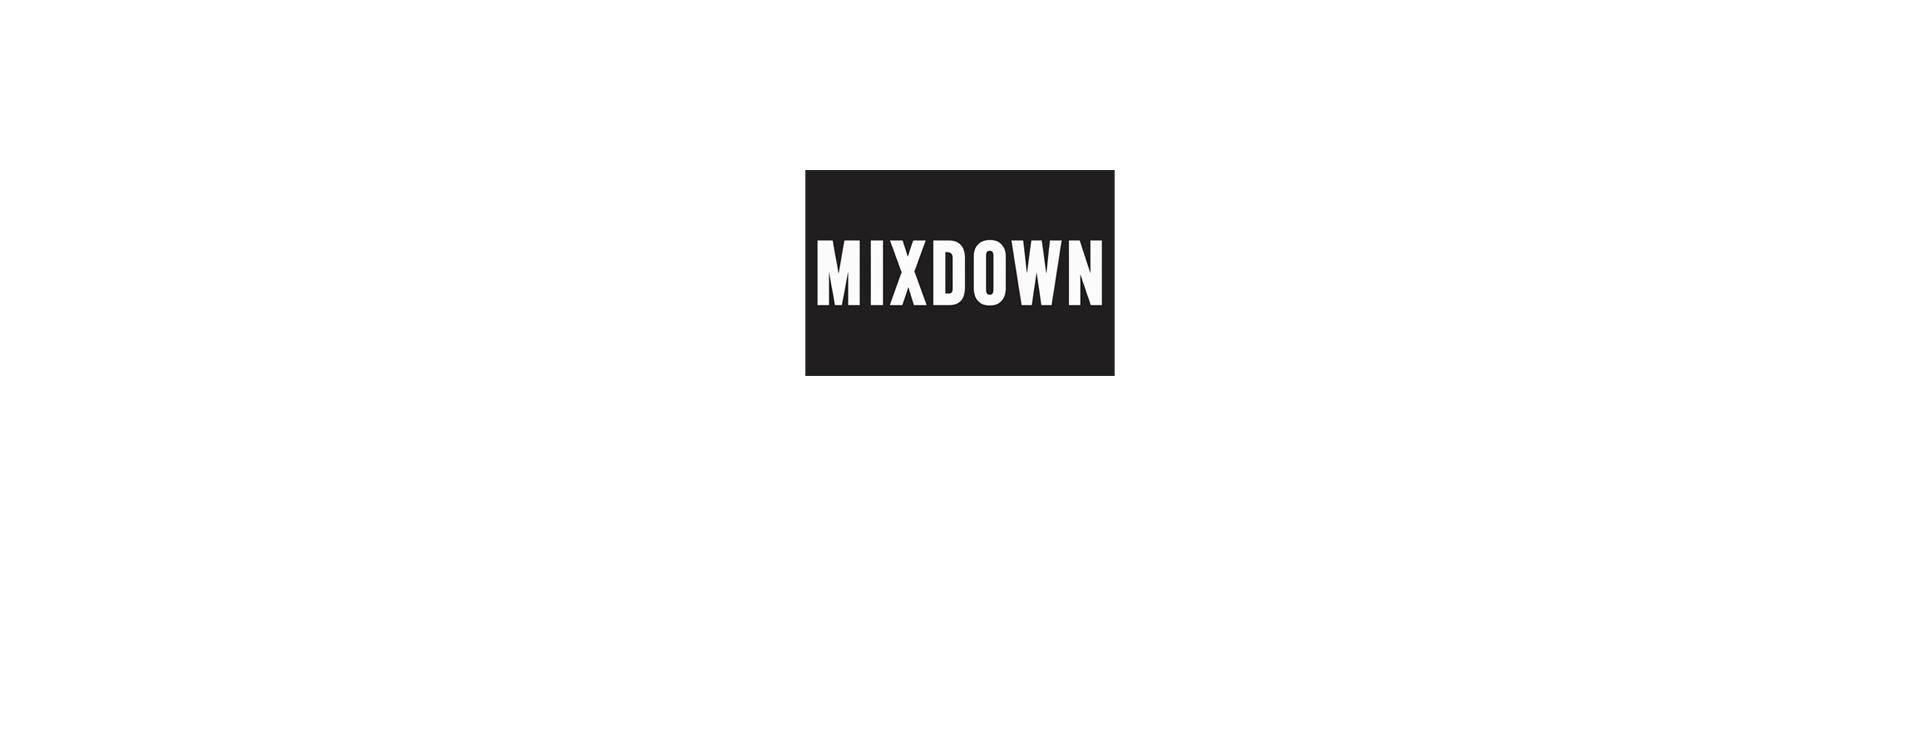 Mixdown award